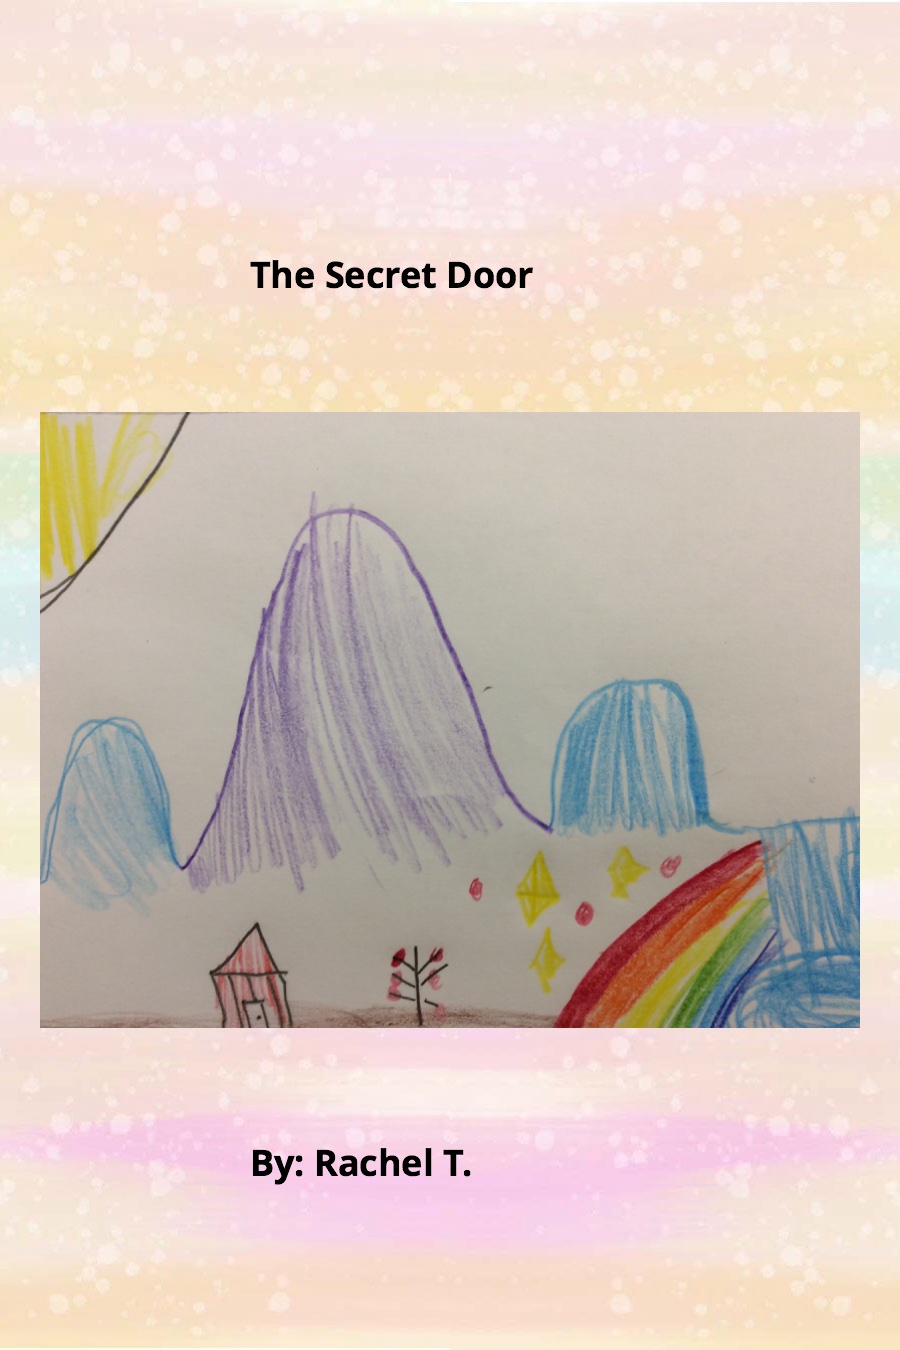 The Secret Door by Rachel T